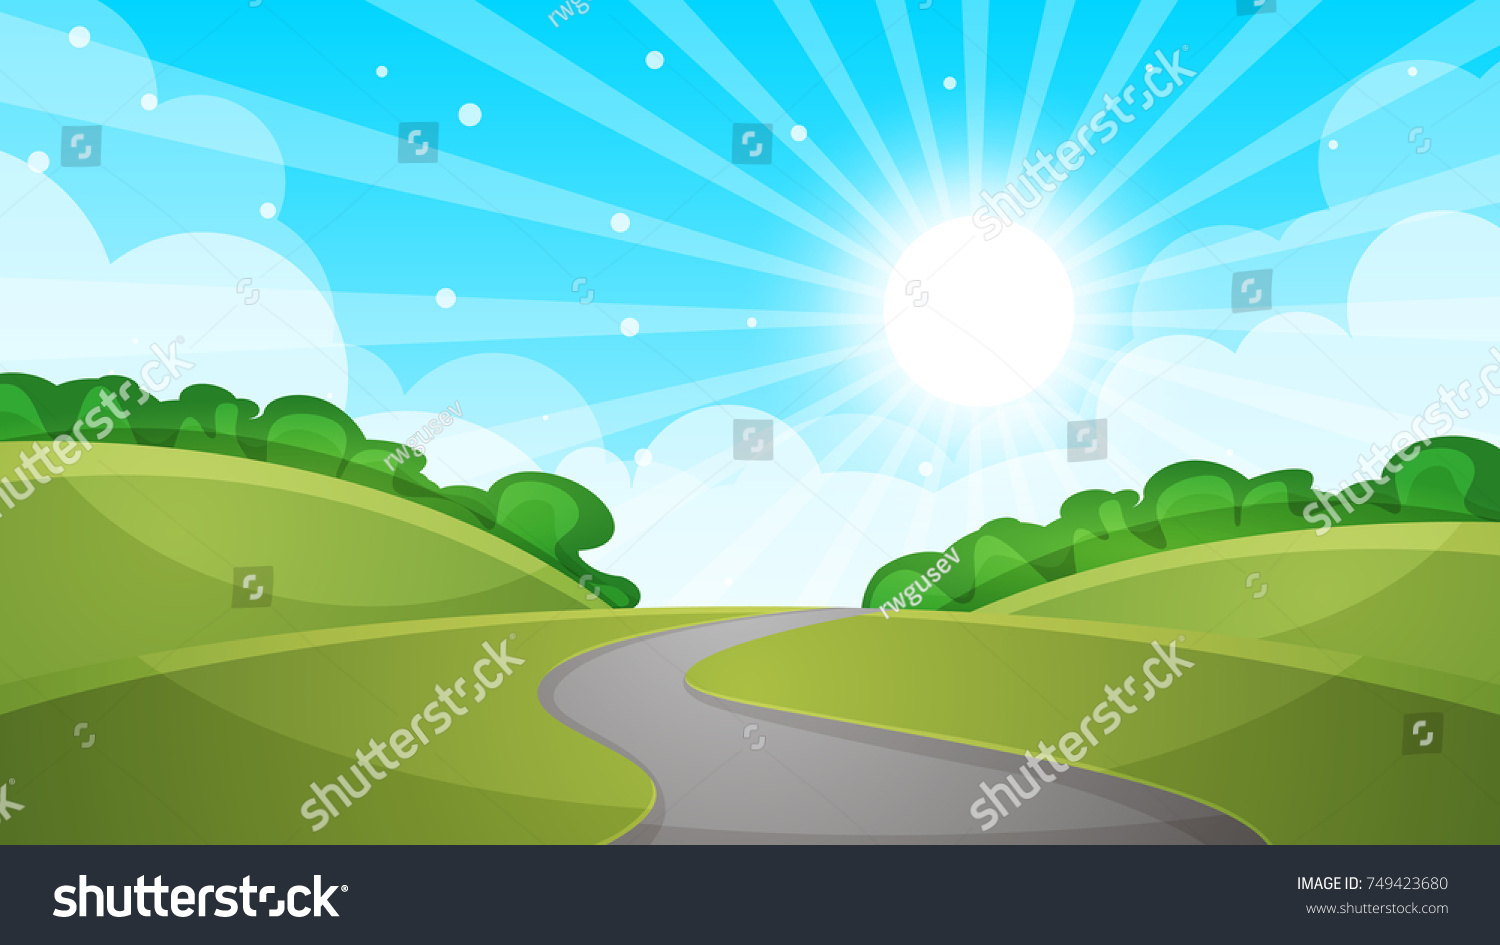 1,983 Winding road cartoon Images, Stock Photos & Vectors | Shutterstock